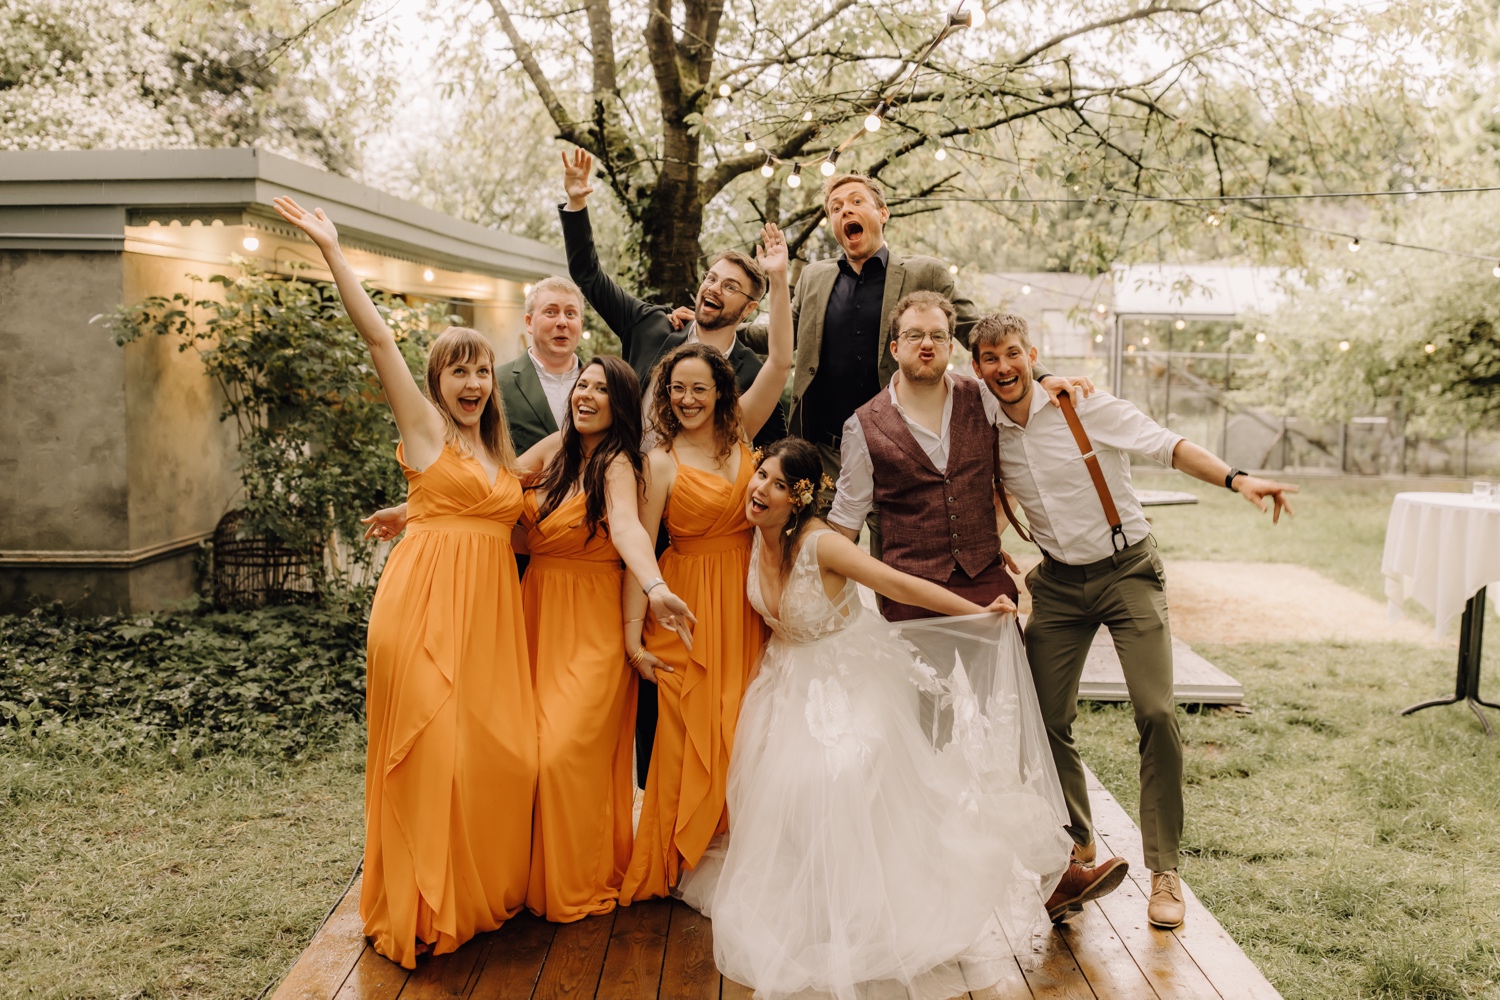 Huwelijksfotograaf Limburg - bruidspaar poseert grappig met vrienden